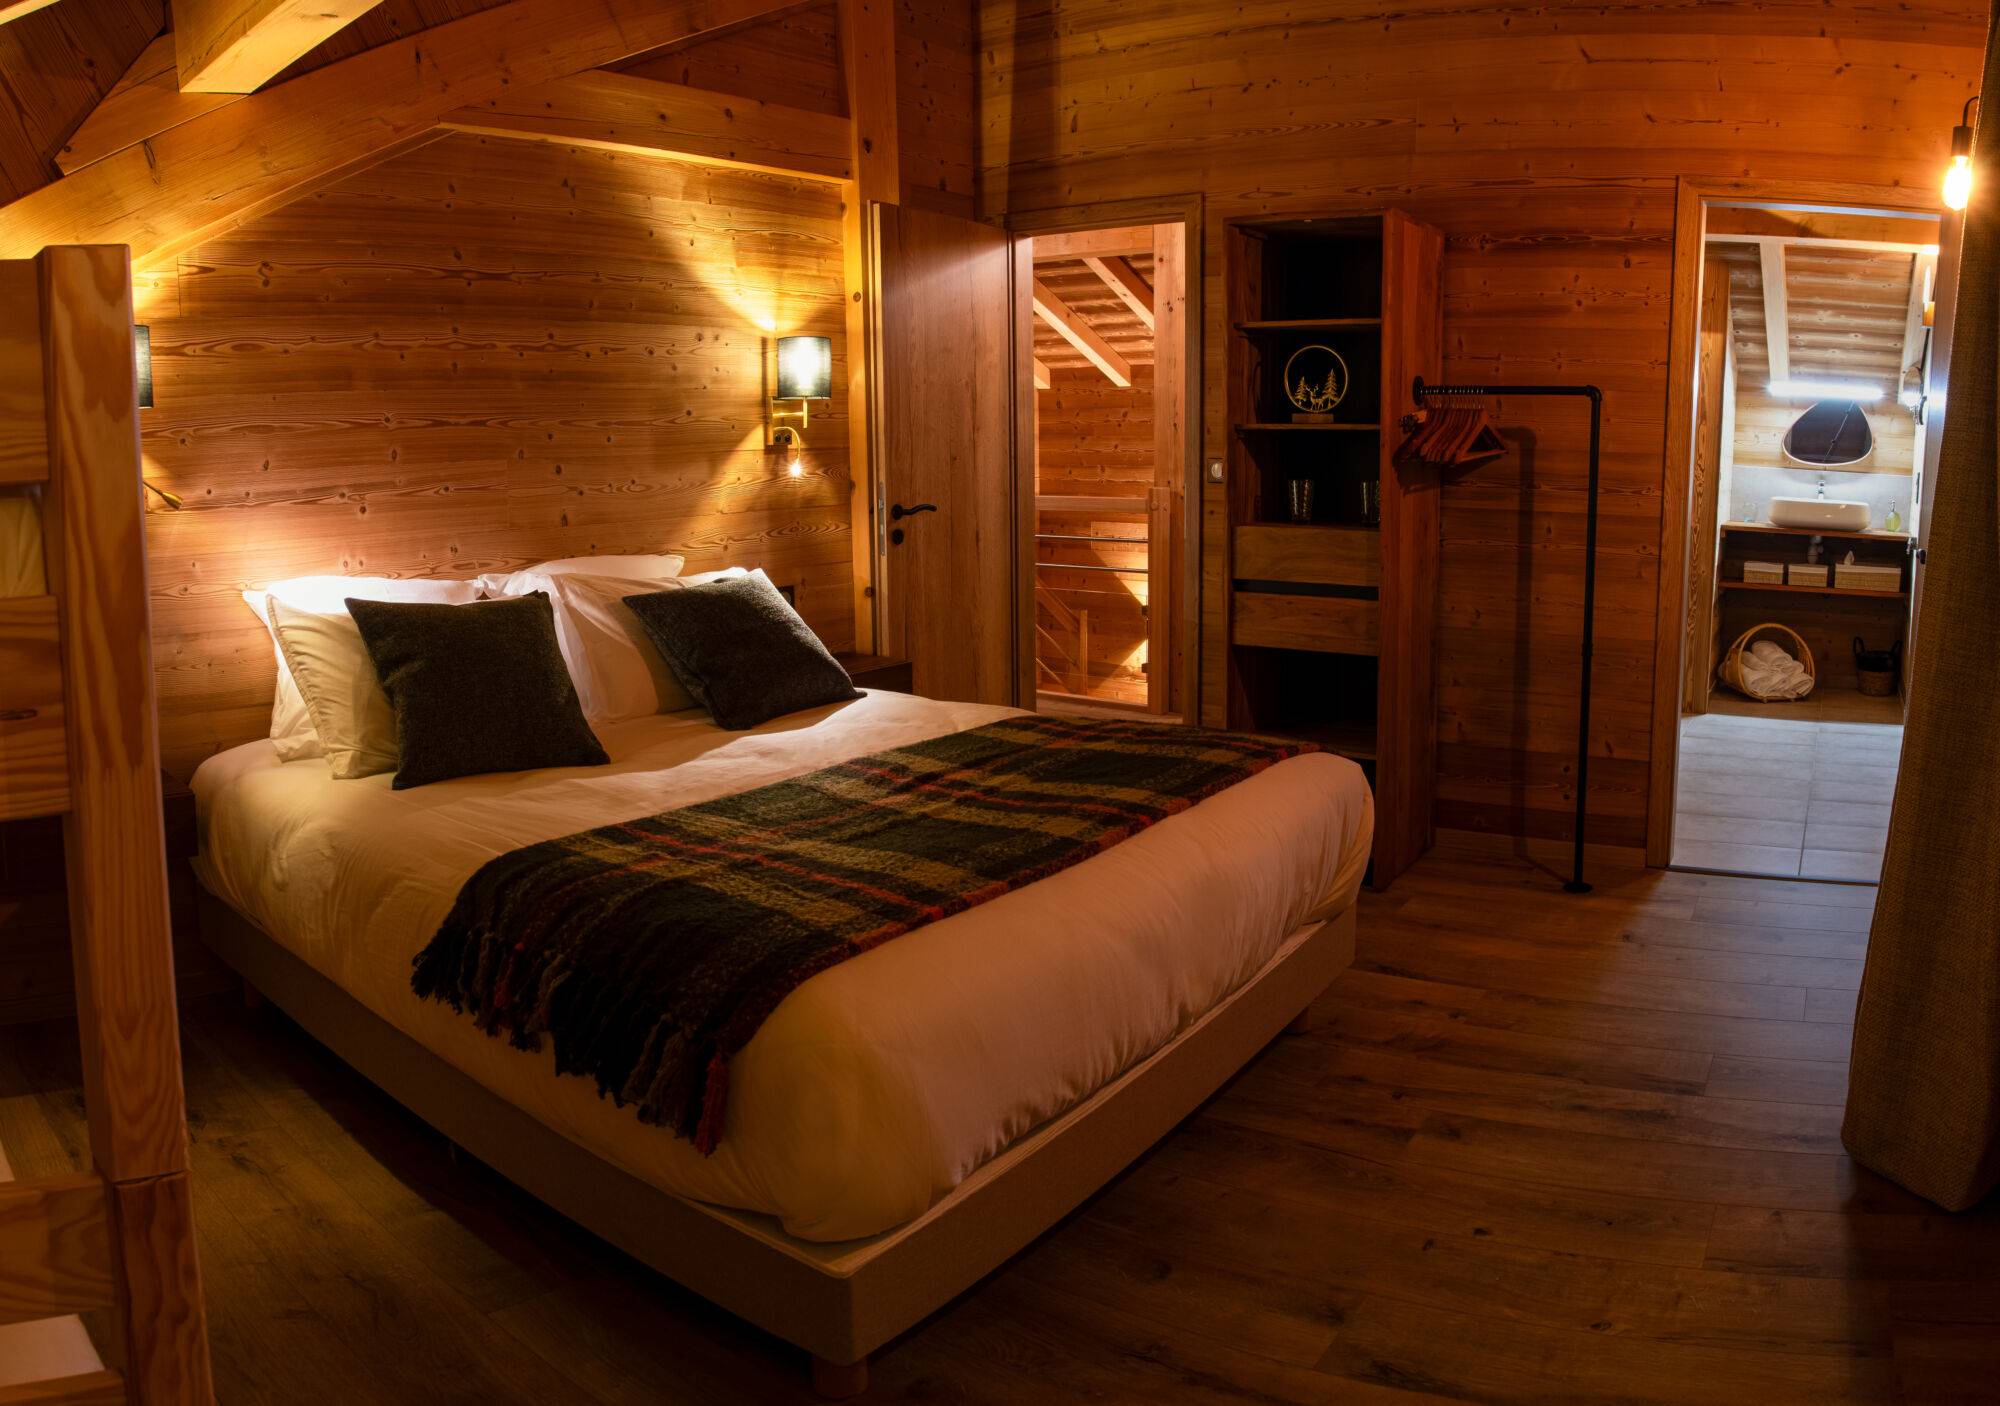 Chalet avec spa et sauna : hébergement touristique familial dans les Vosges à Le Saulcy vers Strasbourg Châtenois